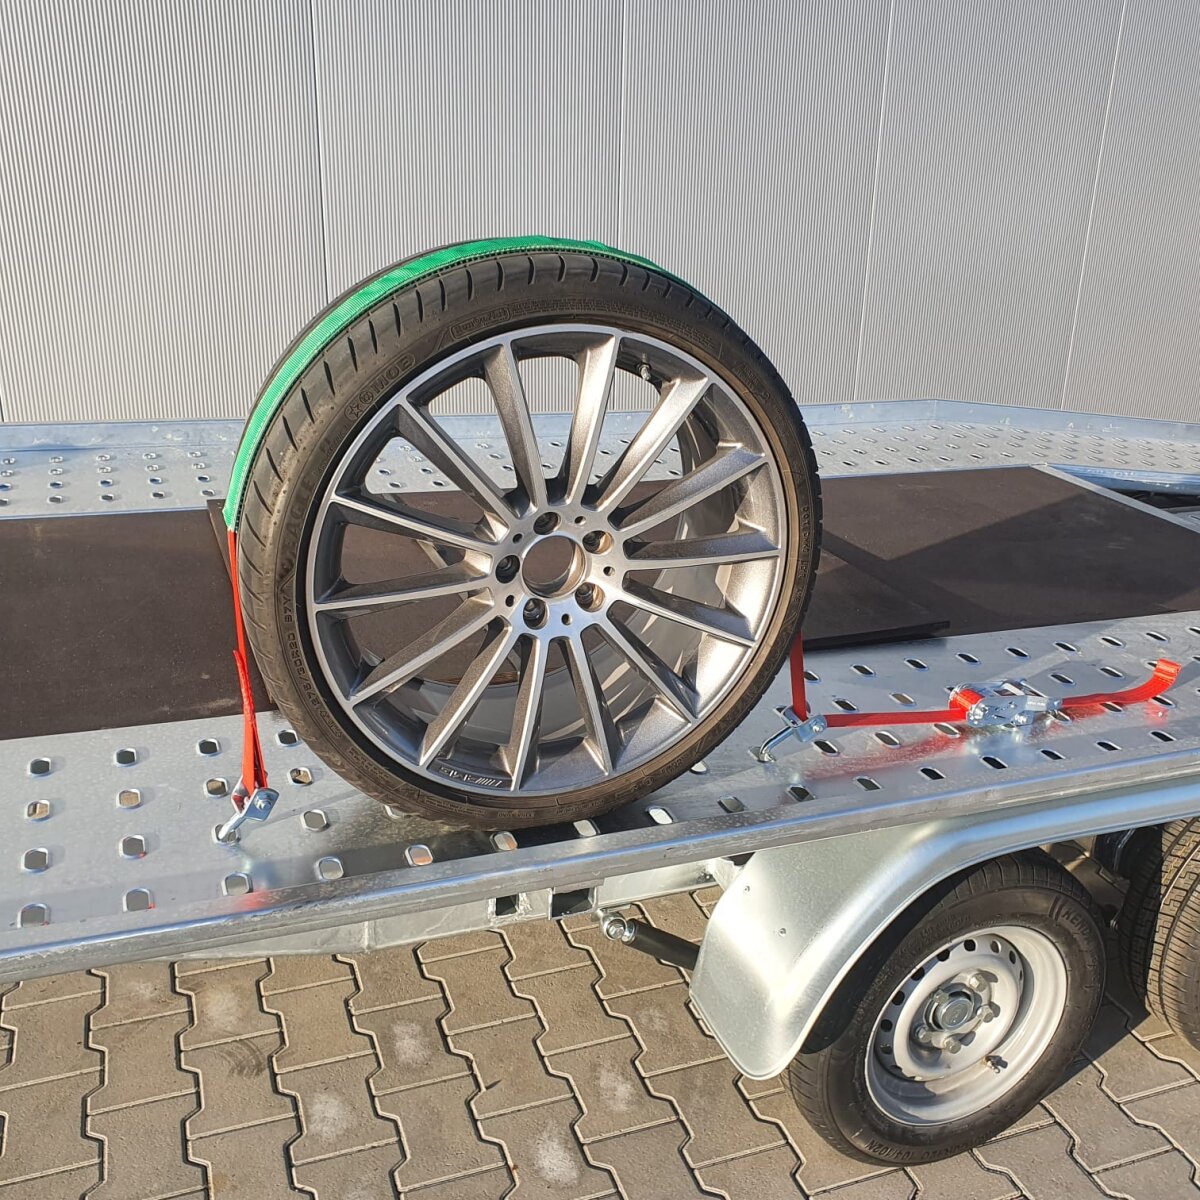 Paket] 1x BullPower Spanngurt AZG152 - Autotransport PKW Zurrgurt  Reifengurt Transportsicherung 35mm - LC 3000 kg / daN mit Ratsche und Haken